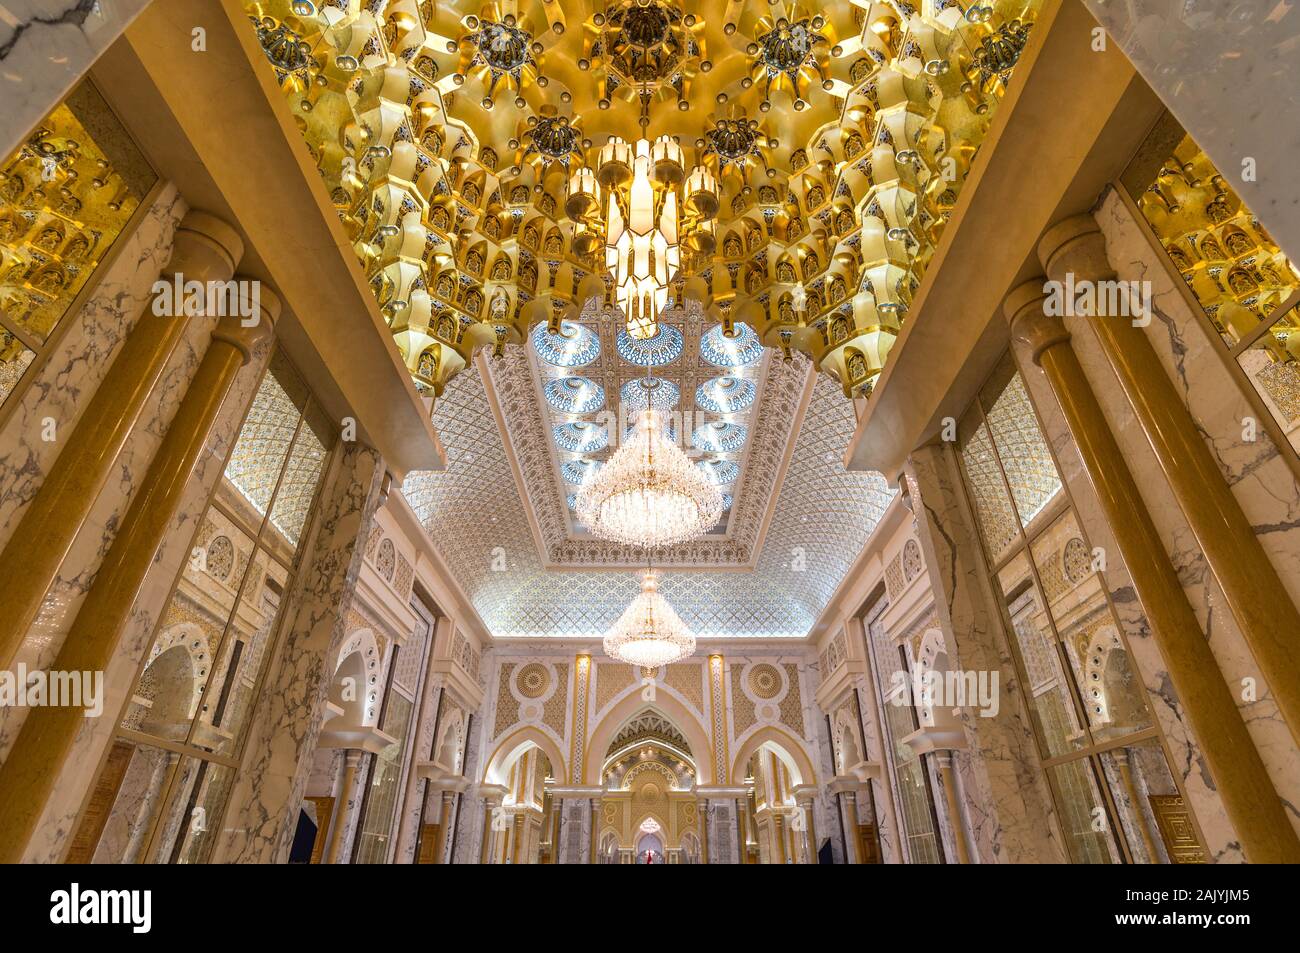 Abu Dhabi, Vereinigte Arabische Emirate: Die üppigen Dekorationen der Präsidentenpalast (Qasr Al Watan), der Palast der Nation, Interieur Stockfoto